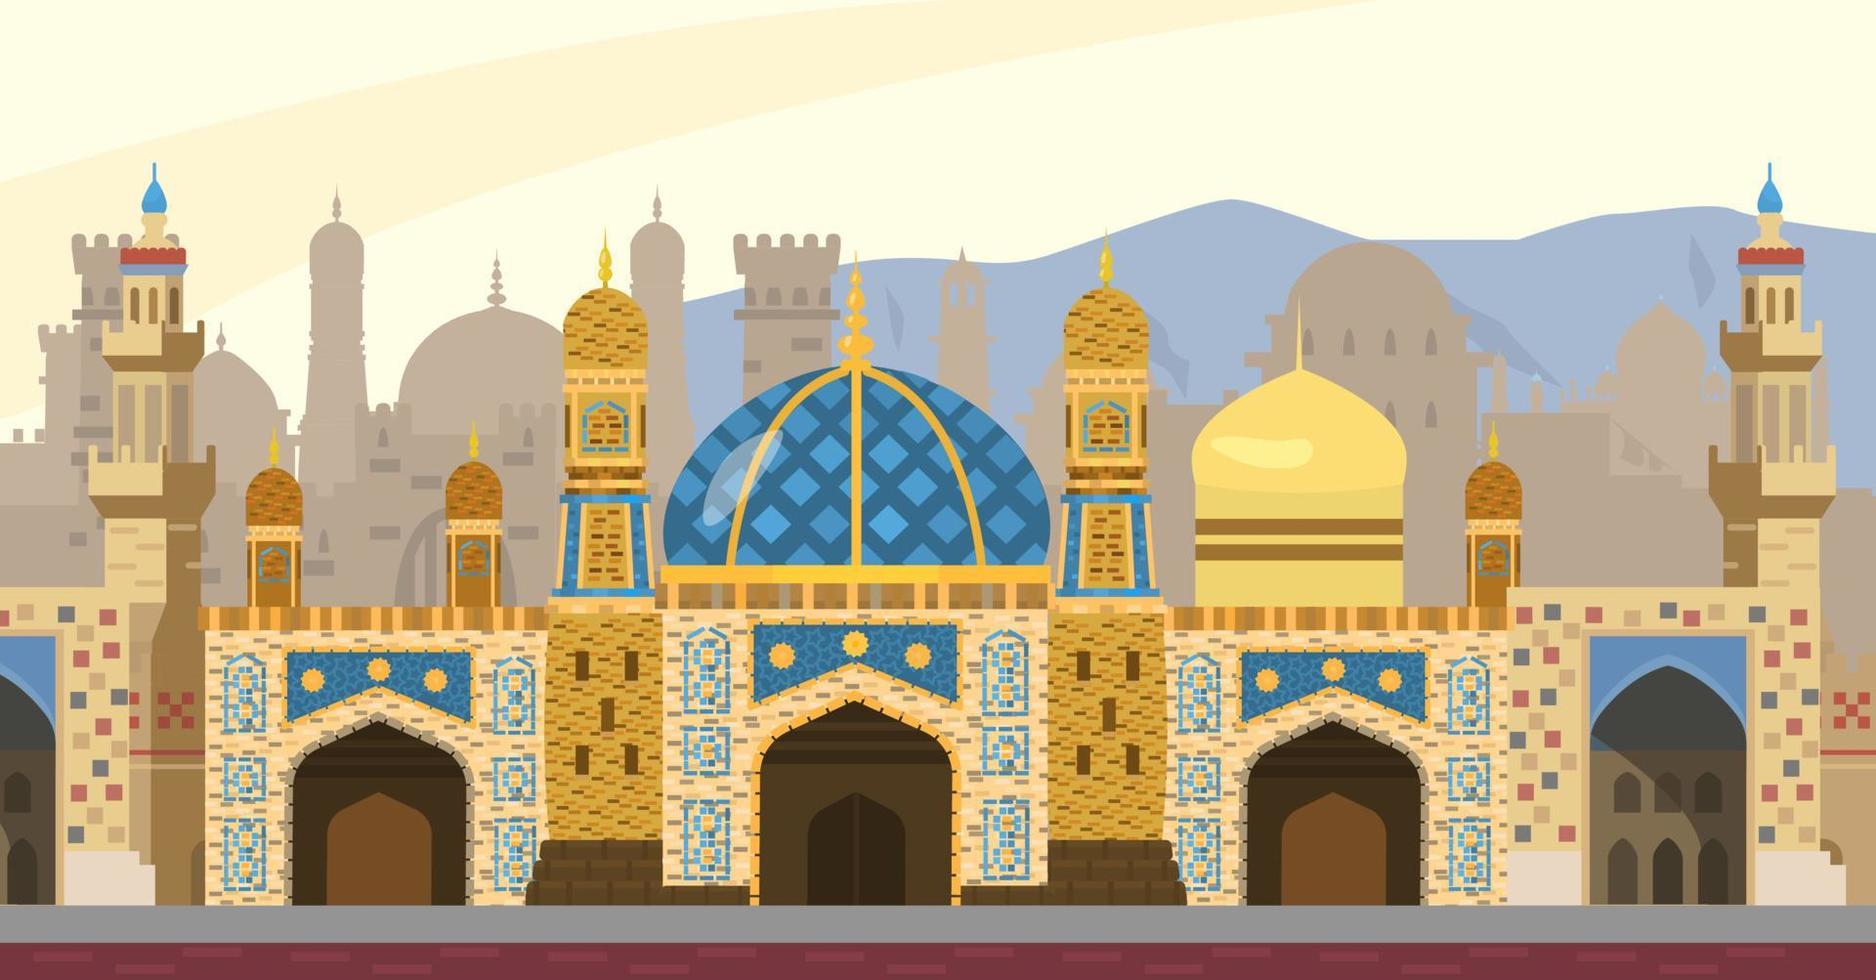 illustration vectorielle de fond de rue arabe. paysage urbain du moyen-orient. mosquée, tours, portes, mosaïques. style plat. vecteur